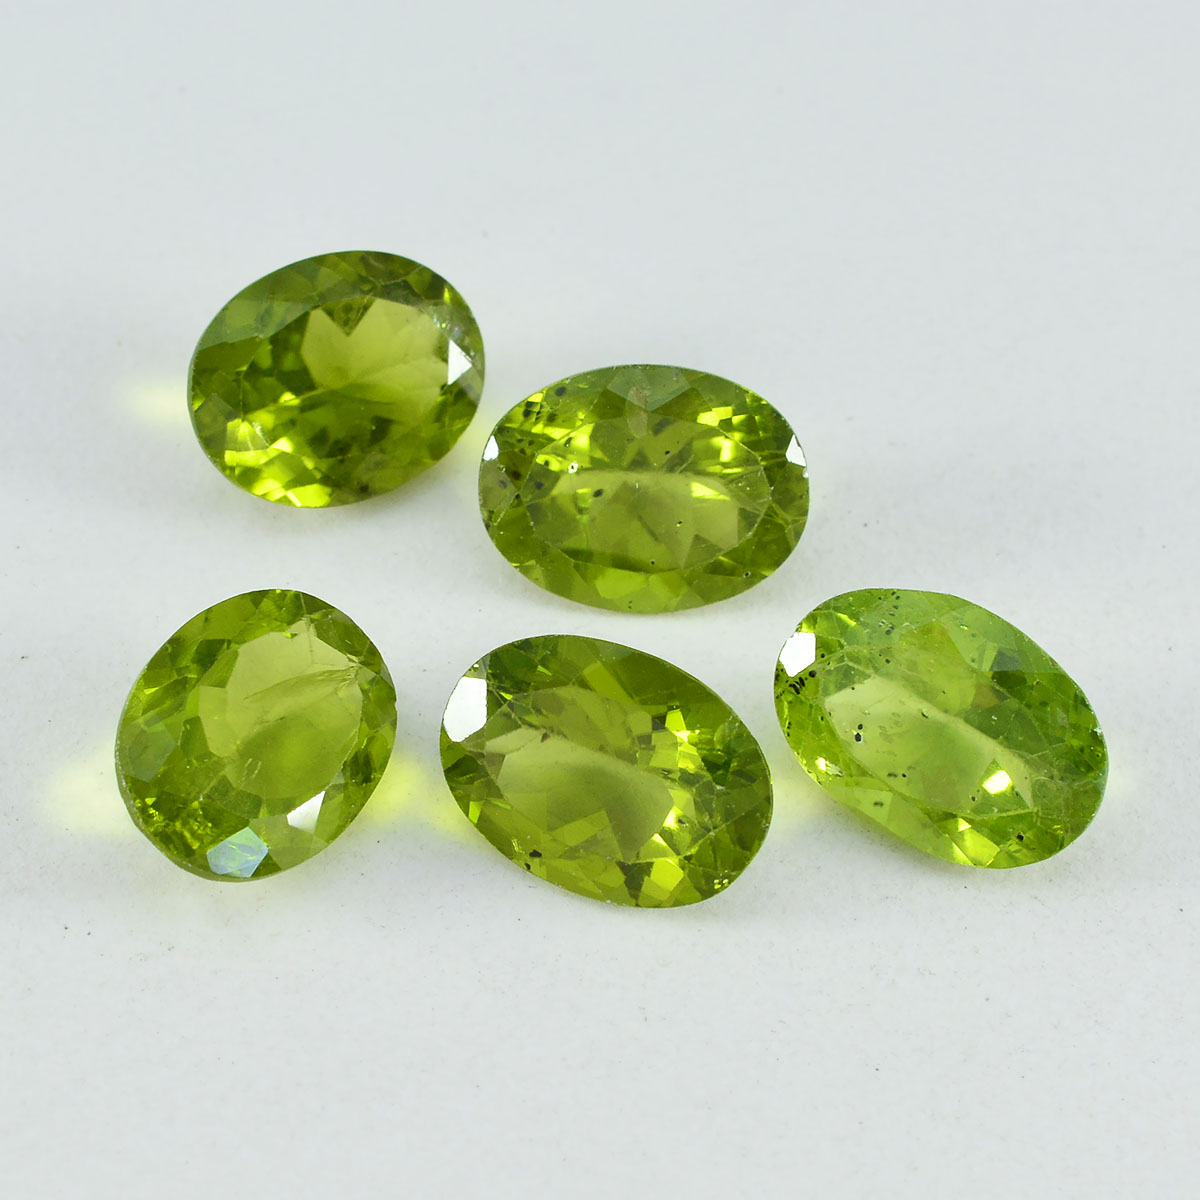 riyogems 1 шт. натуральный зеленый перидот ограненный 10х14 мм овальной формы удивительного качества россыпь драгоценных камней